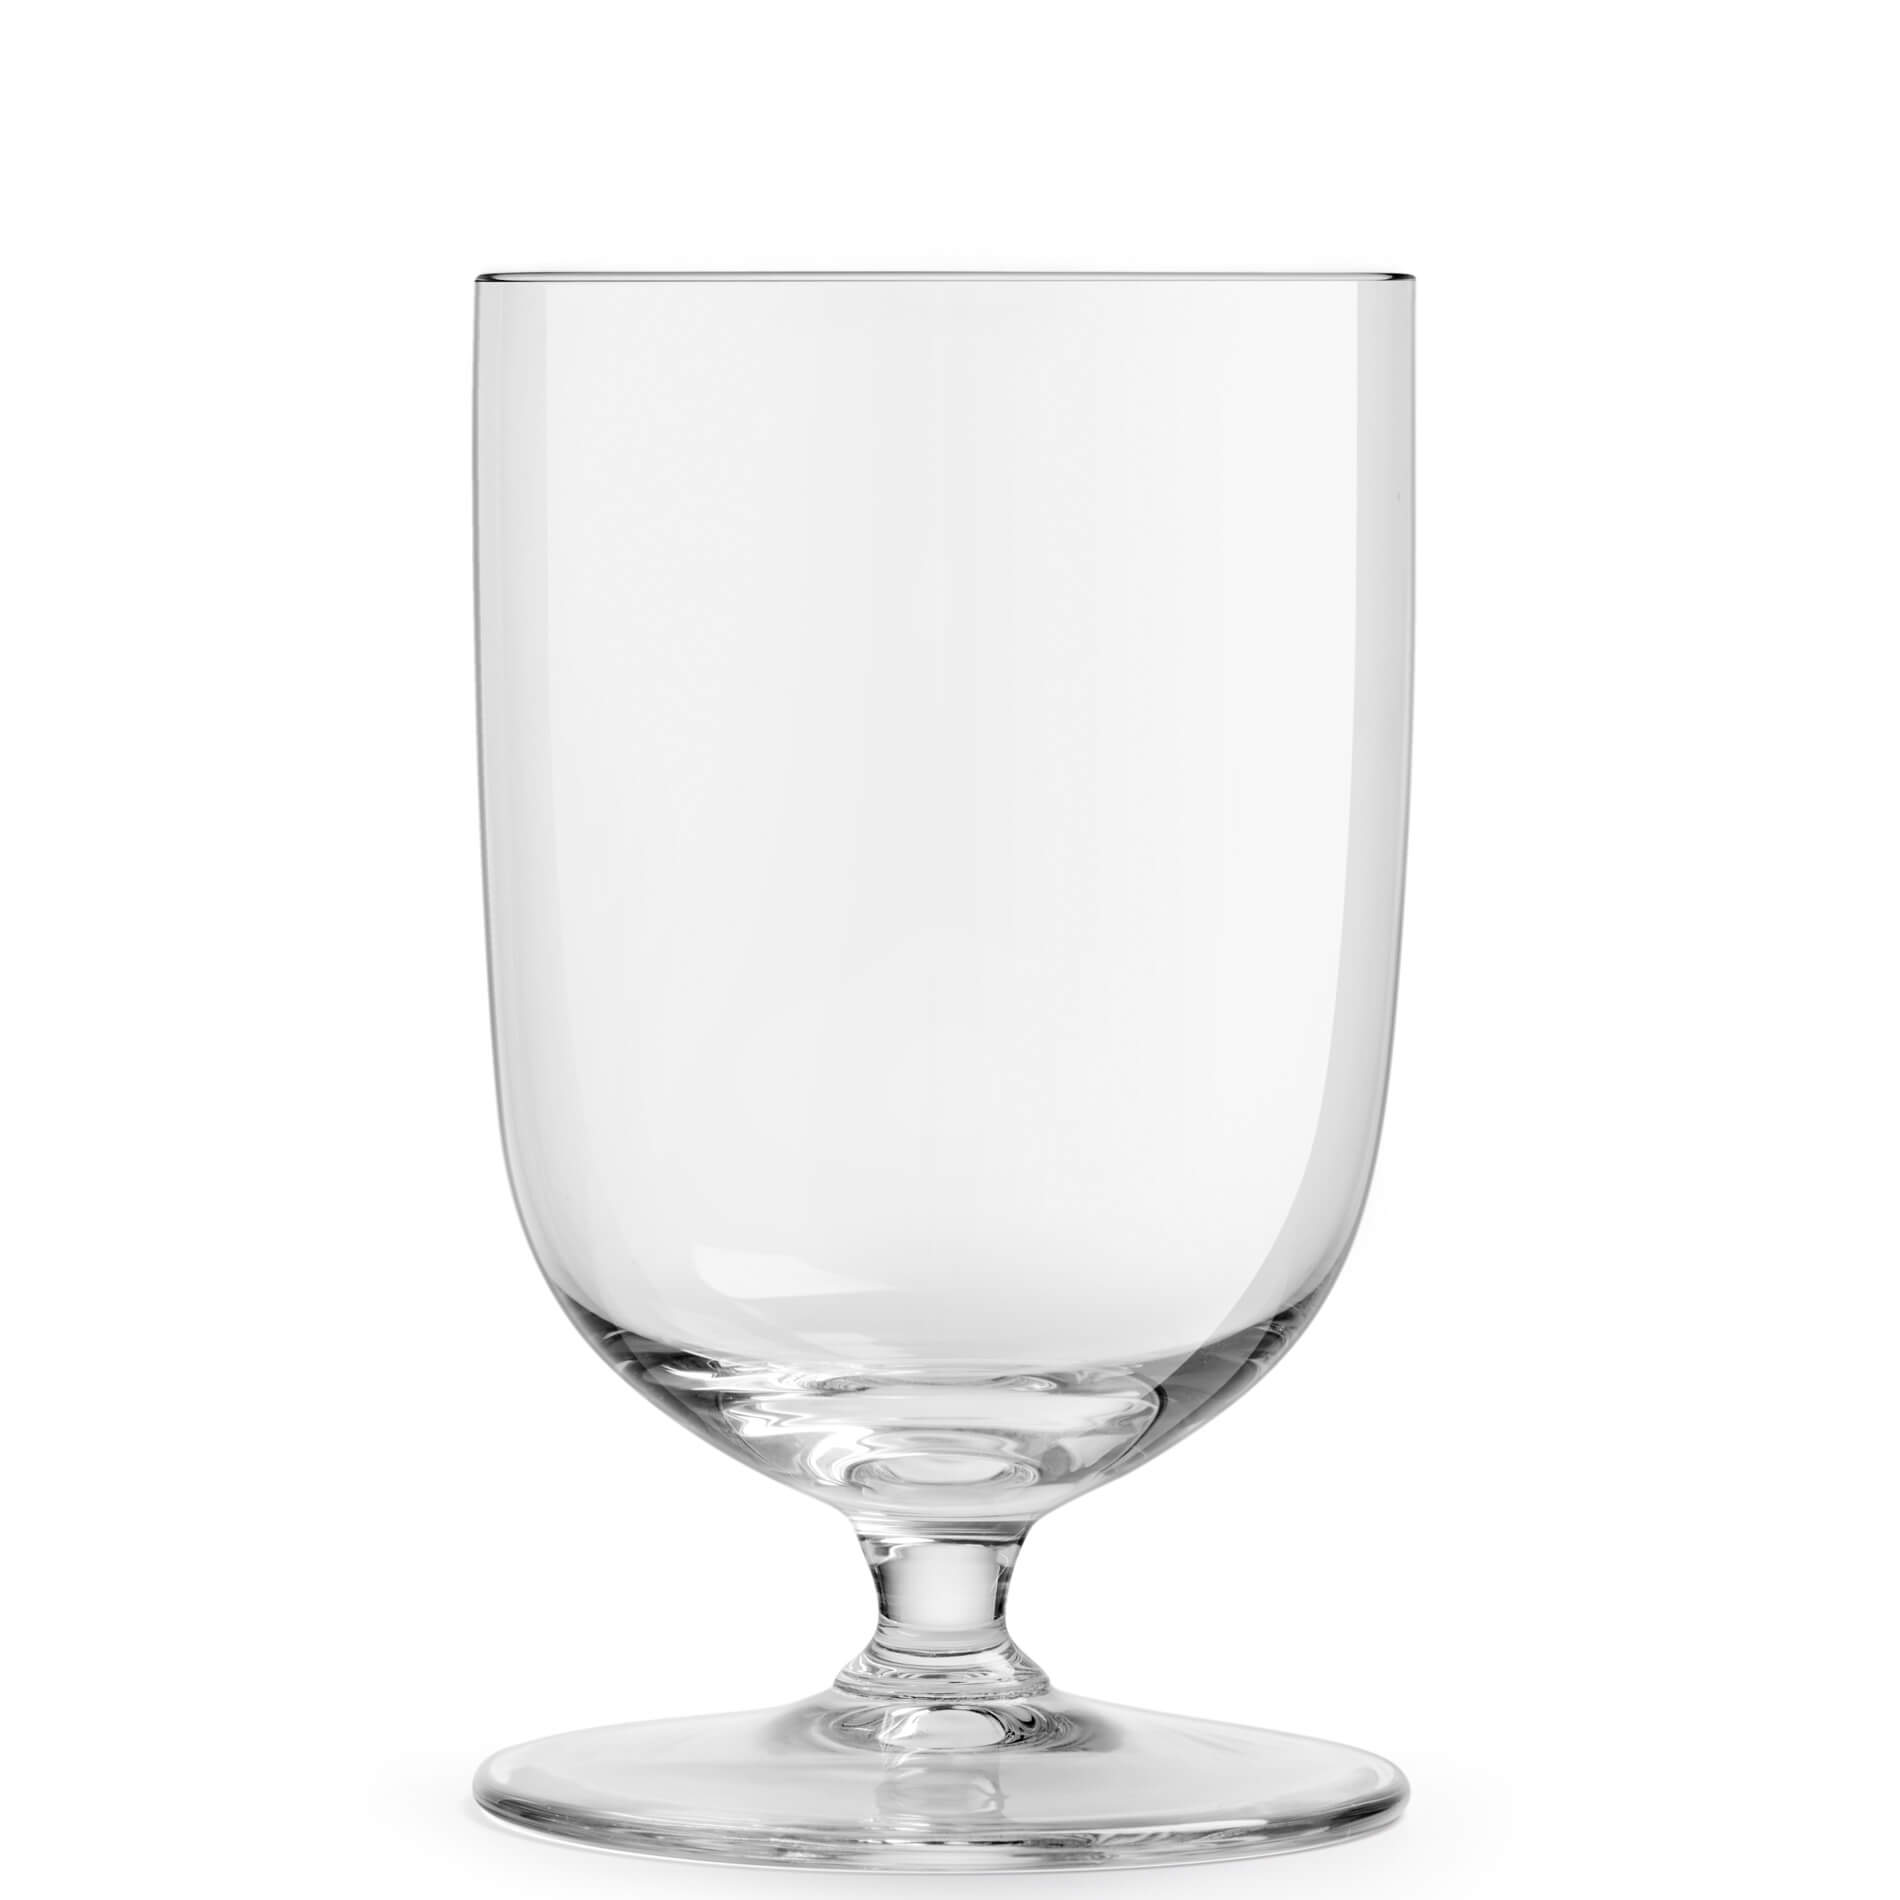 D.O.F. Glass Levitas, Libbey - 355ml (1 pc.)